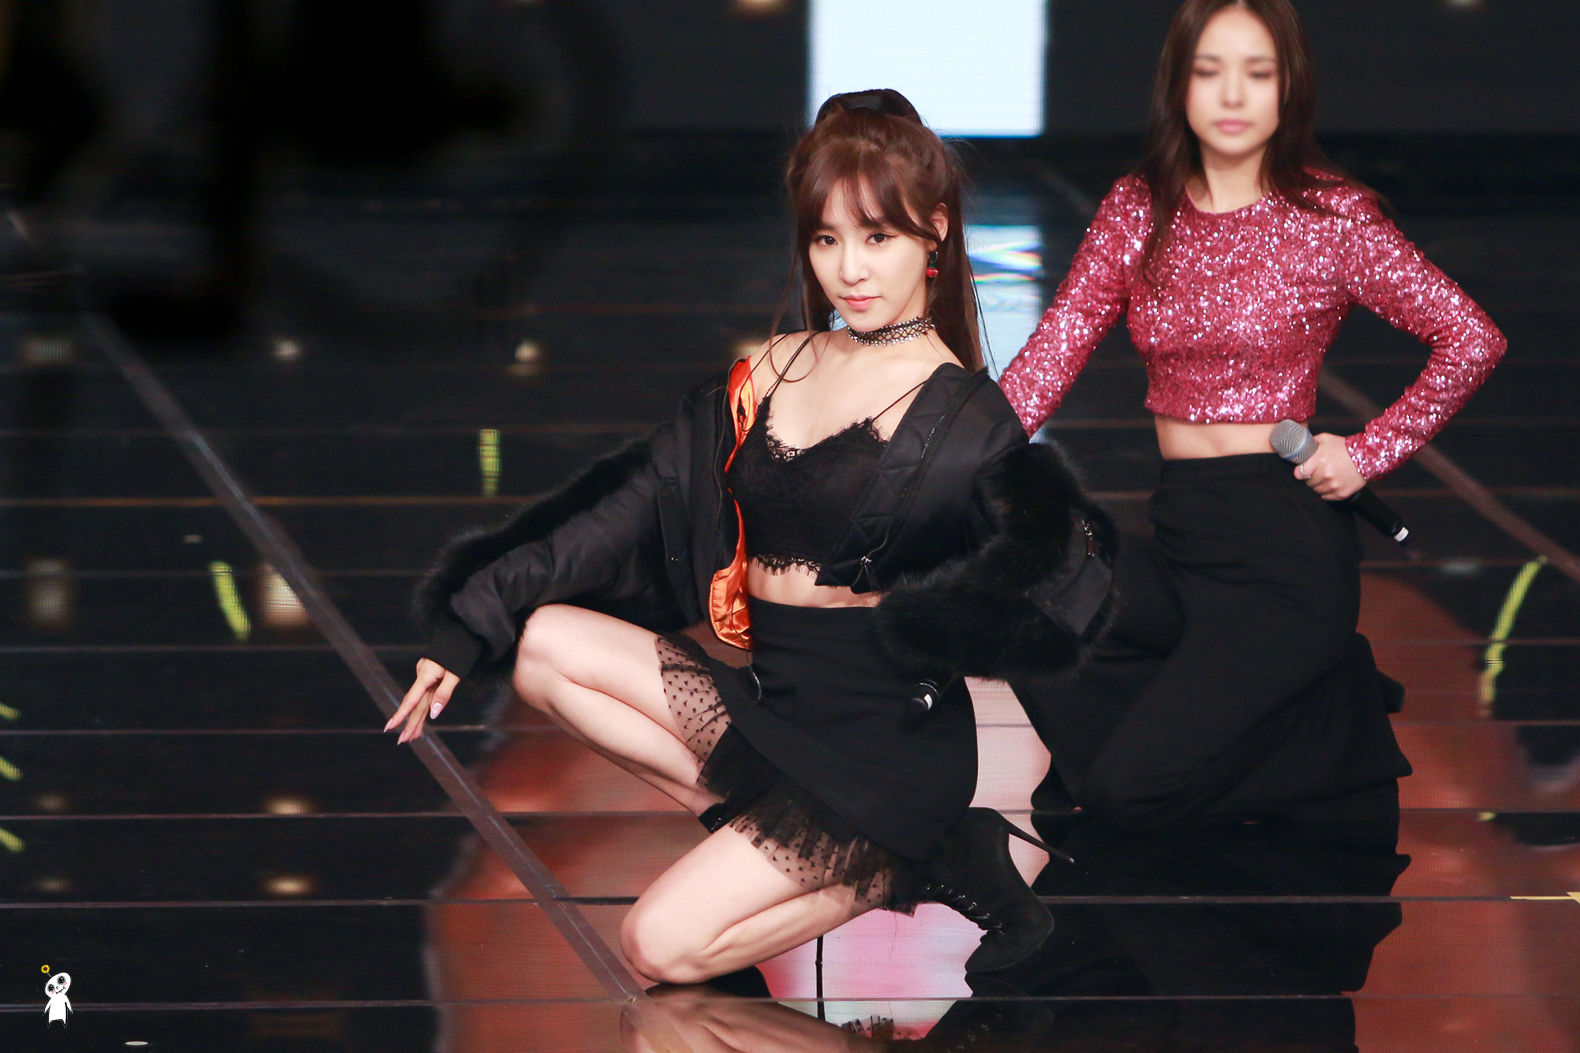 [PIC][24-12-2016]Tiffany tham dự và biểu diễn tại “2016 KBS Entertainment Awards” vào hôm nay - Page 3 247EE940586B7003010E3A